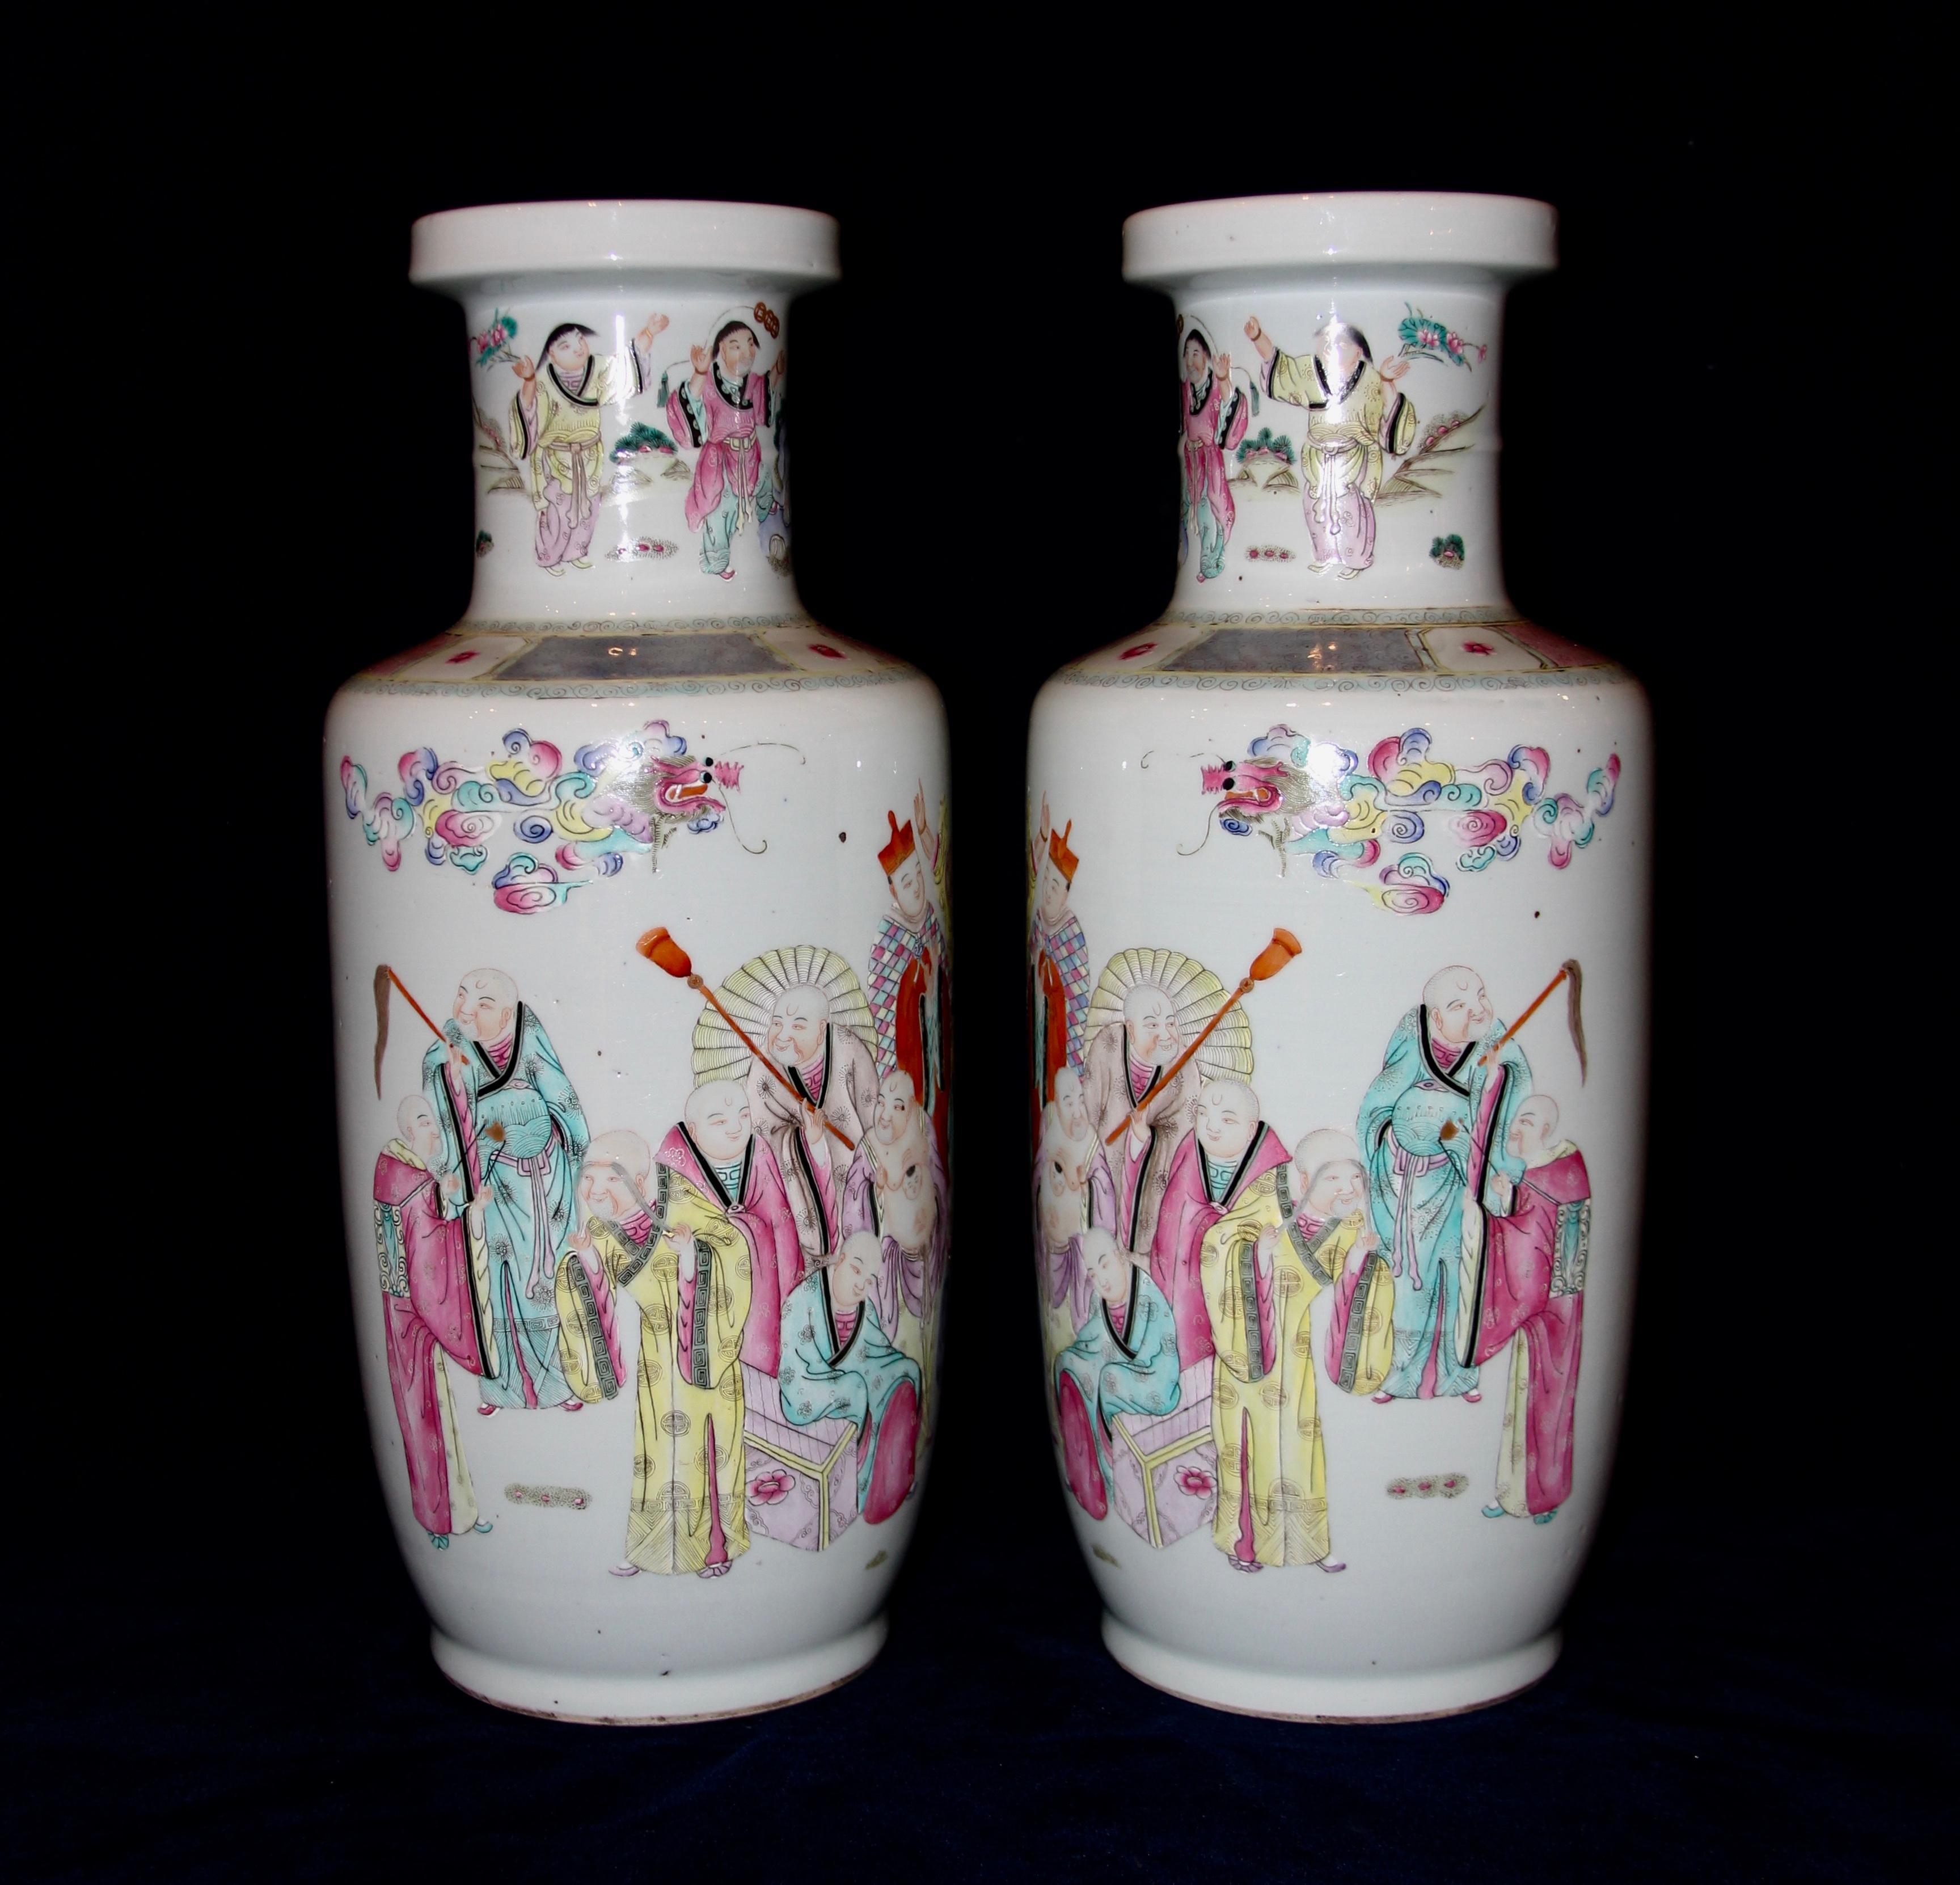 Ein fabelhaftes Paar antiker Bangchuiping, 'Rouleau' Chinesische Famille Rose Vasen mit handgemalten Luohans Figuren. Jede Vase hat die Form einer Rouleau-Vase und ist mit achtzehn handgemalten Arhats oder Luohans verziert. Die fabelhaften Luohans